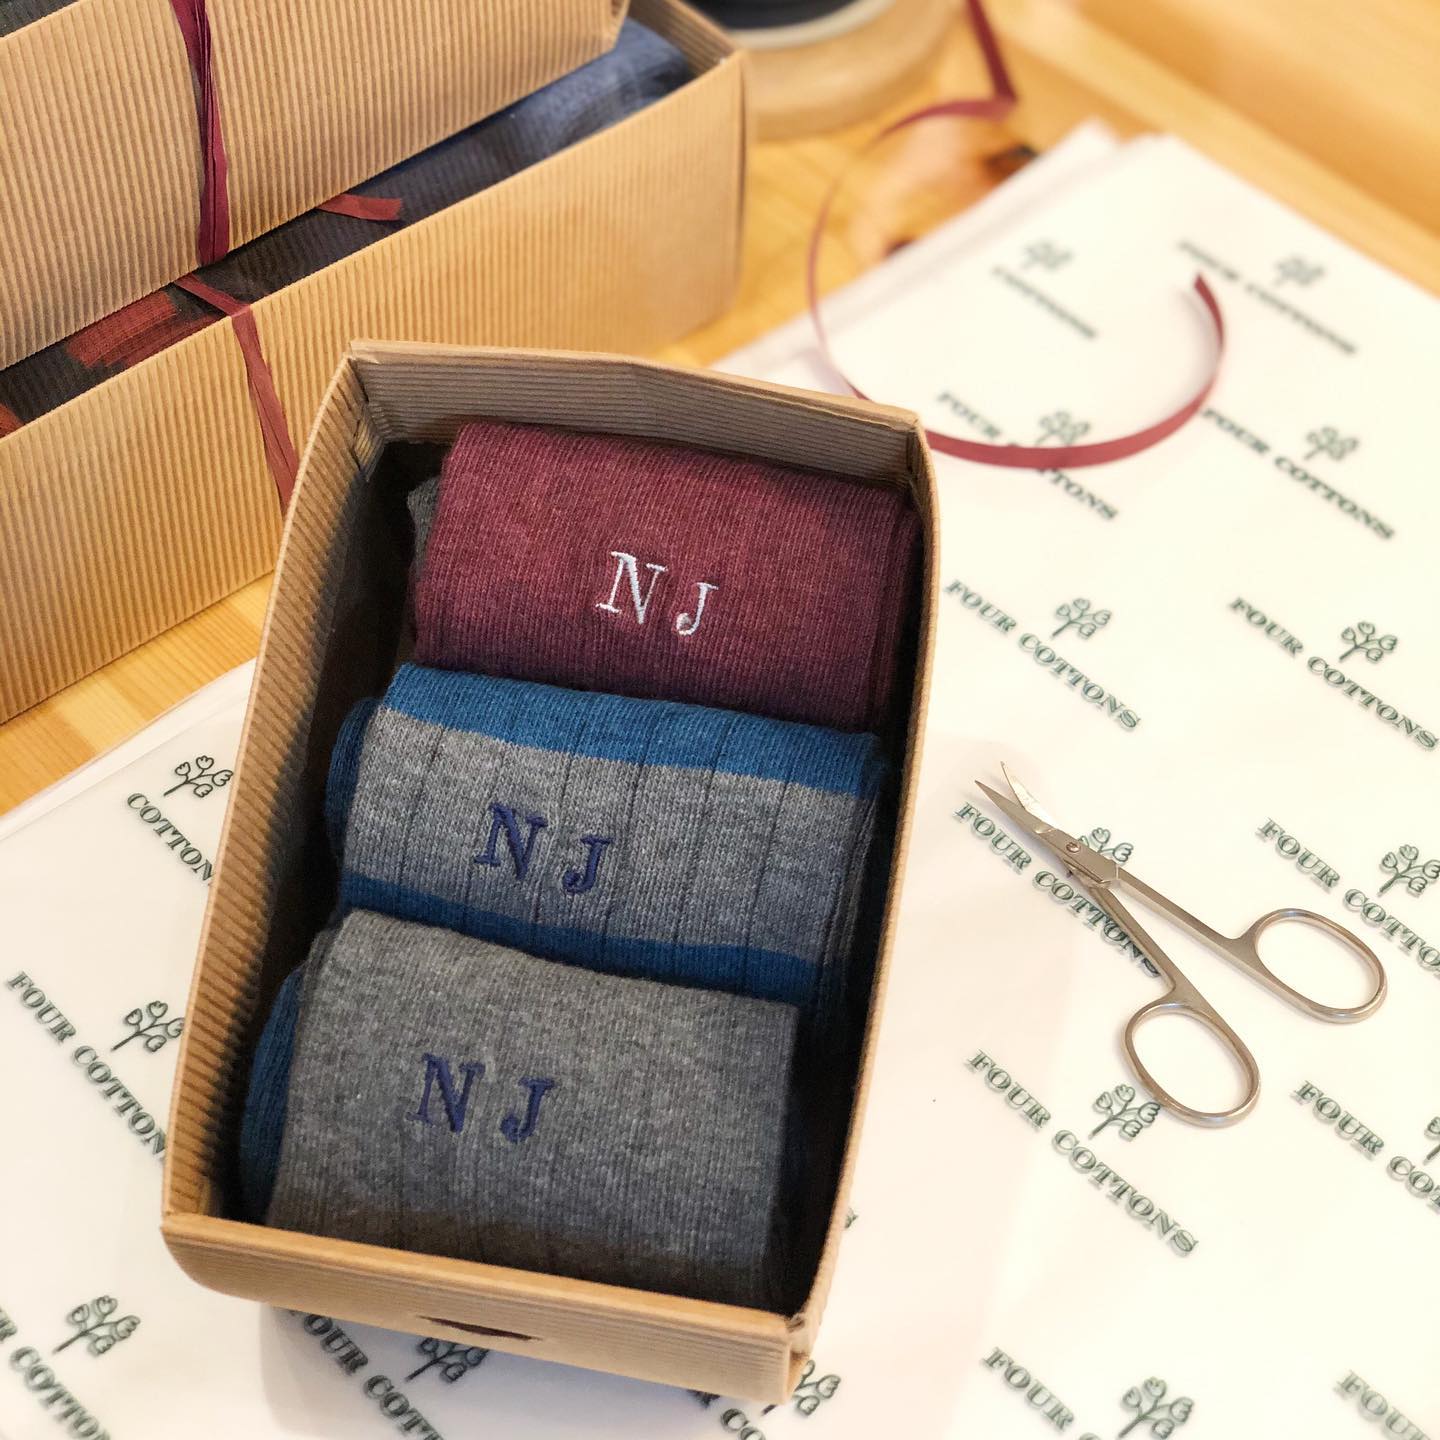 Preparando, preparando.... pedidos que salen ❤️🙌🏽 Gracias por confiar en nosotros siempre. 

#fourcottons #socks #calcetines #cotton #algodon #madeinspain #personalizado #regalosoriginales #regalos #pedidos #iniciales #bordado #losautenticos